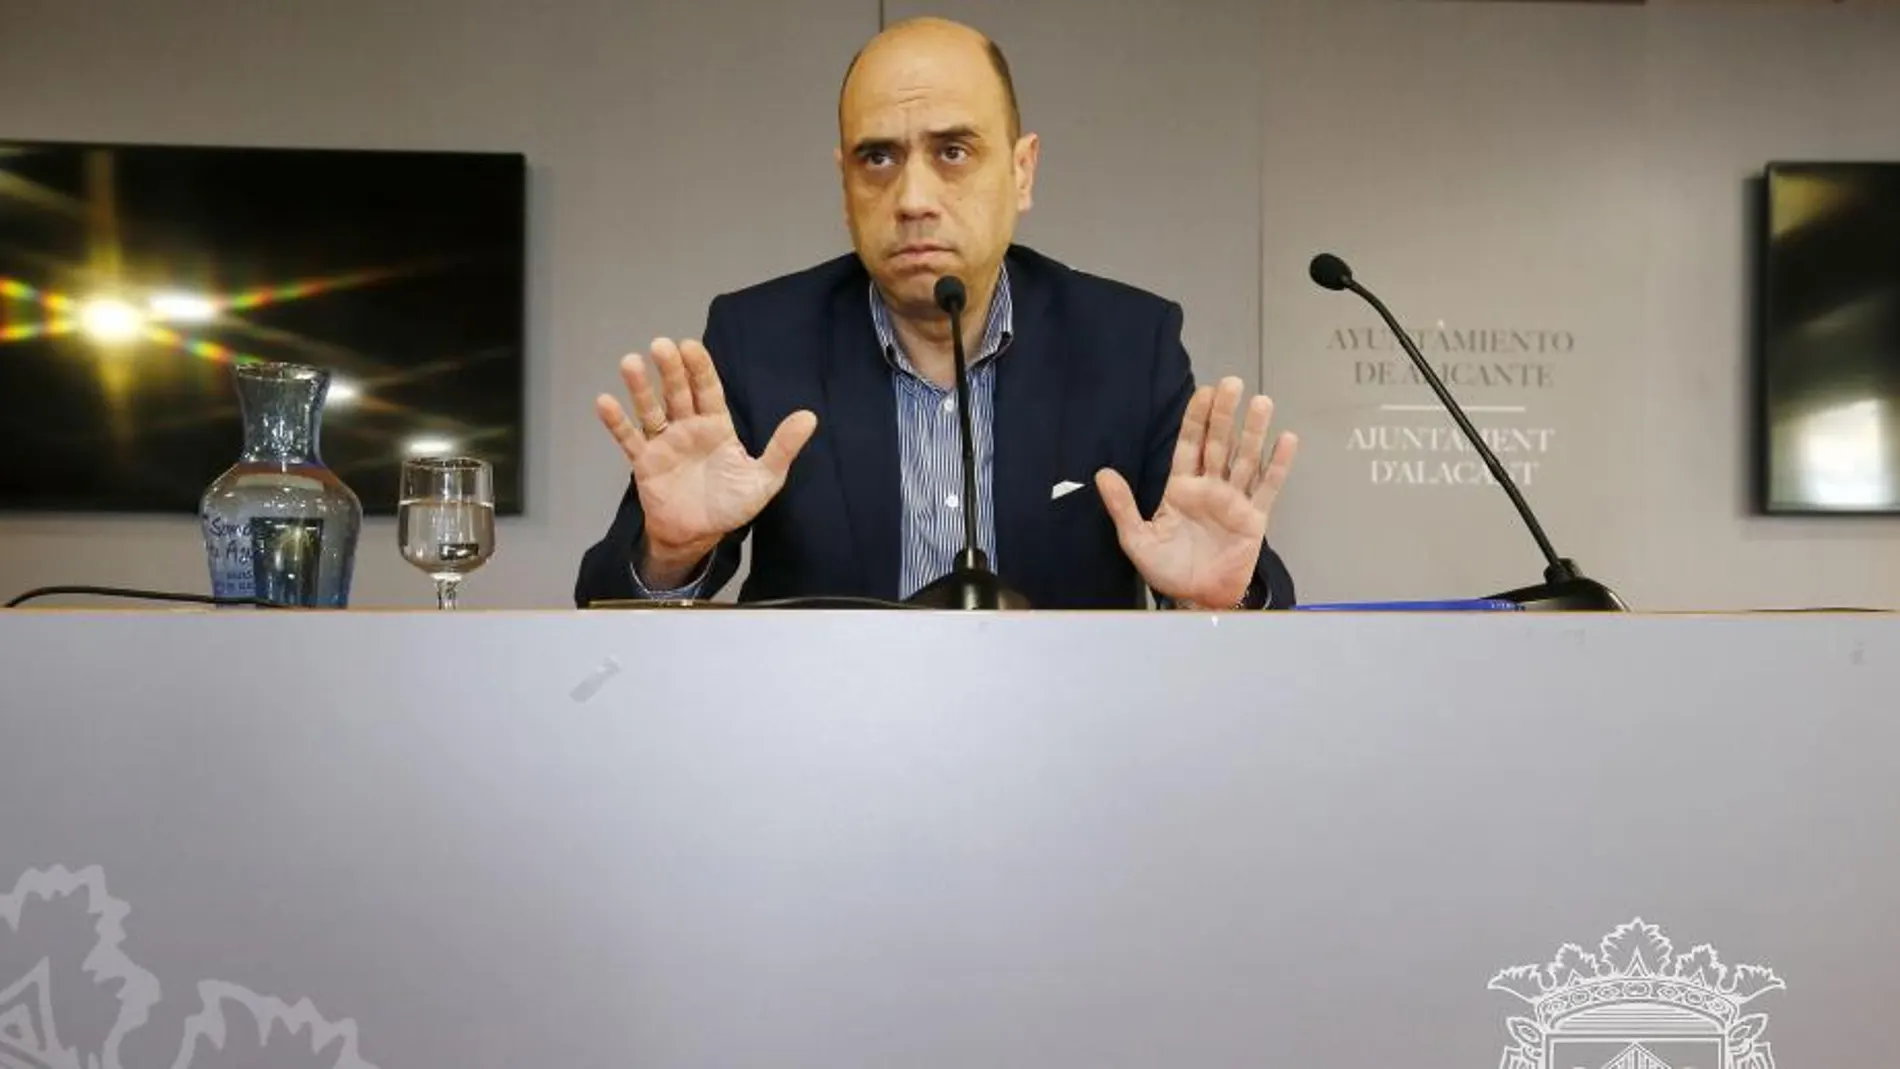 El alcalde de Alicante, Gabriel Echávarri, durante su comparecencia el lunes en la que anunció que dejará su cargo si la socialista Montesinos ocupa la Alcaldía